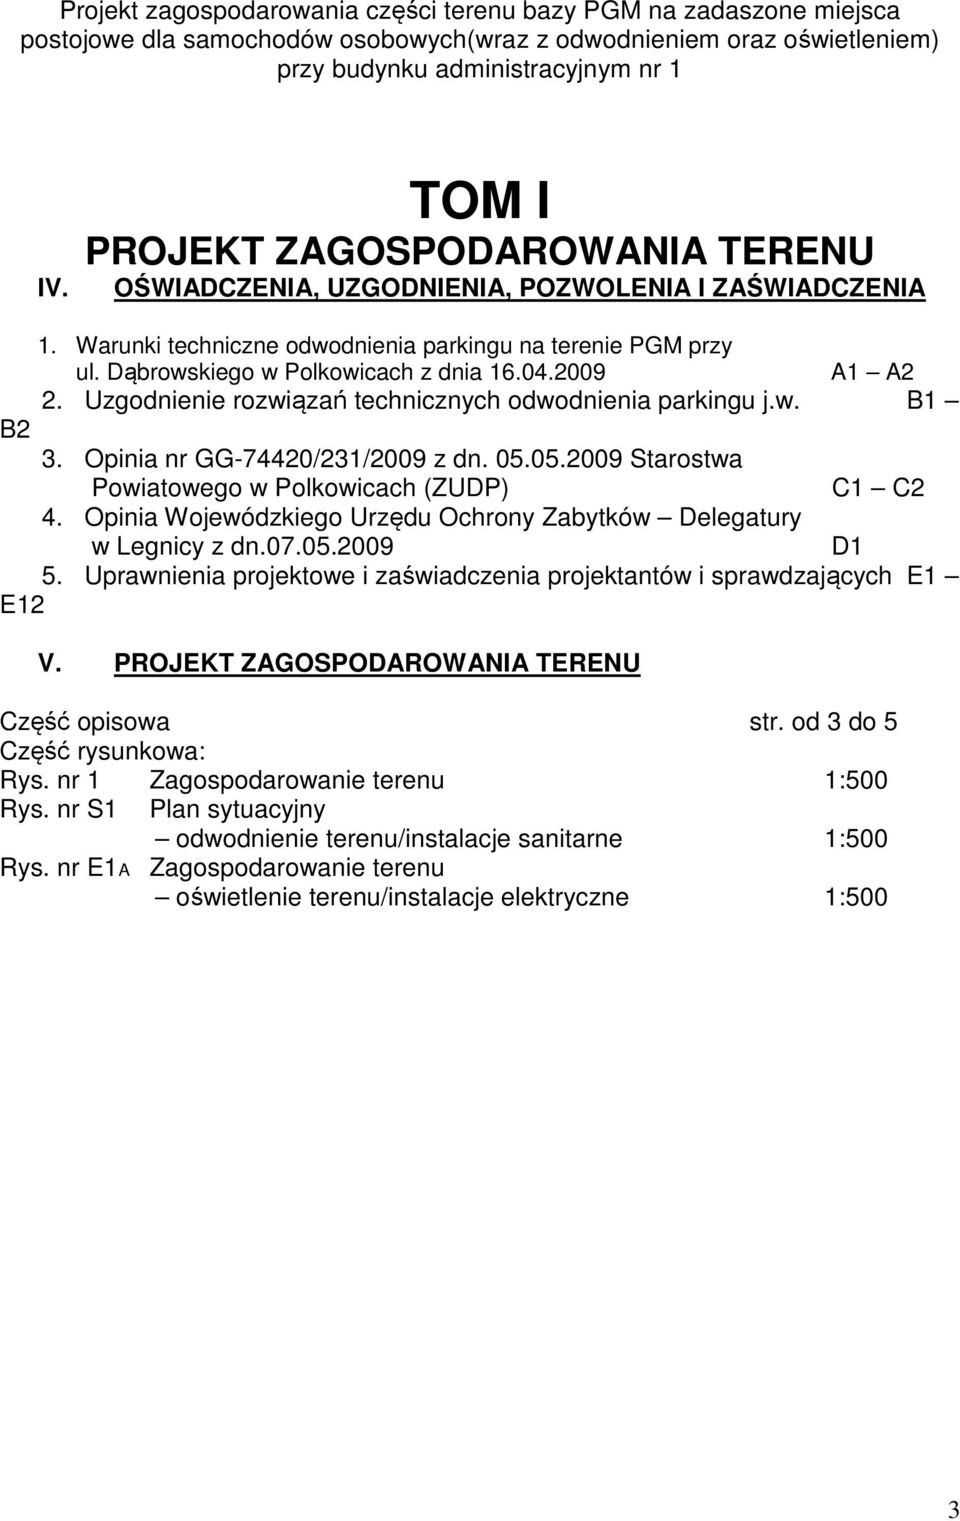 2009 A1 A2 2. Uzgodnienie rozwiązań technicznych odwodnienia parkingu j.w. B1 B2 3. Opinia nr GG-74420/231/2009 z dn. 05.05.2009 Starostwa Powiatowego w Polkowicach (ZUDP) C1 C2 4.